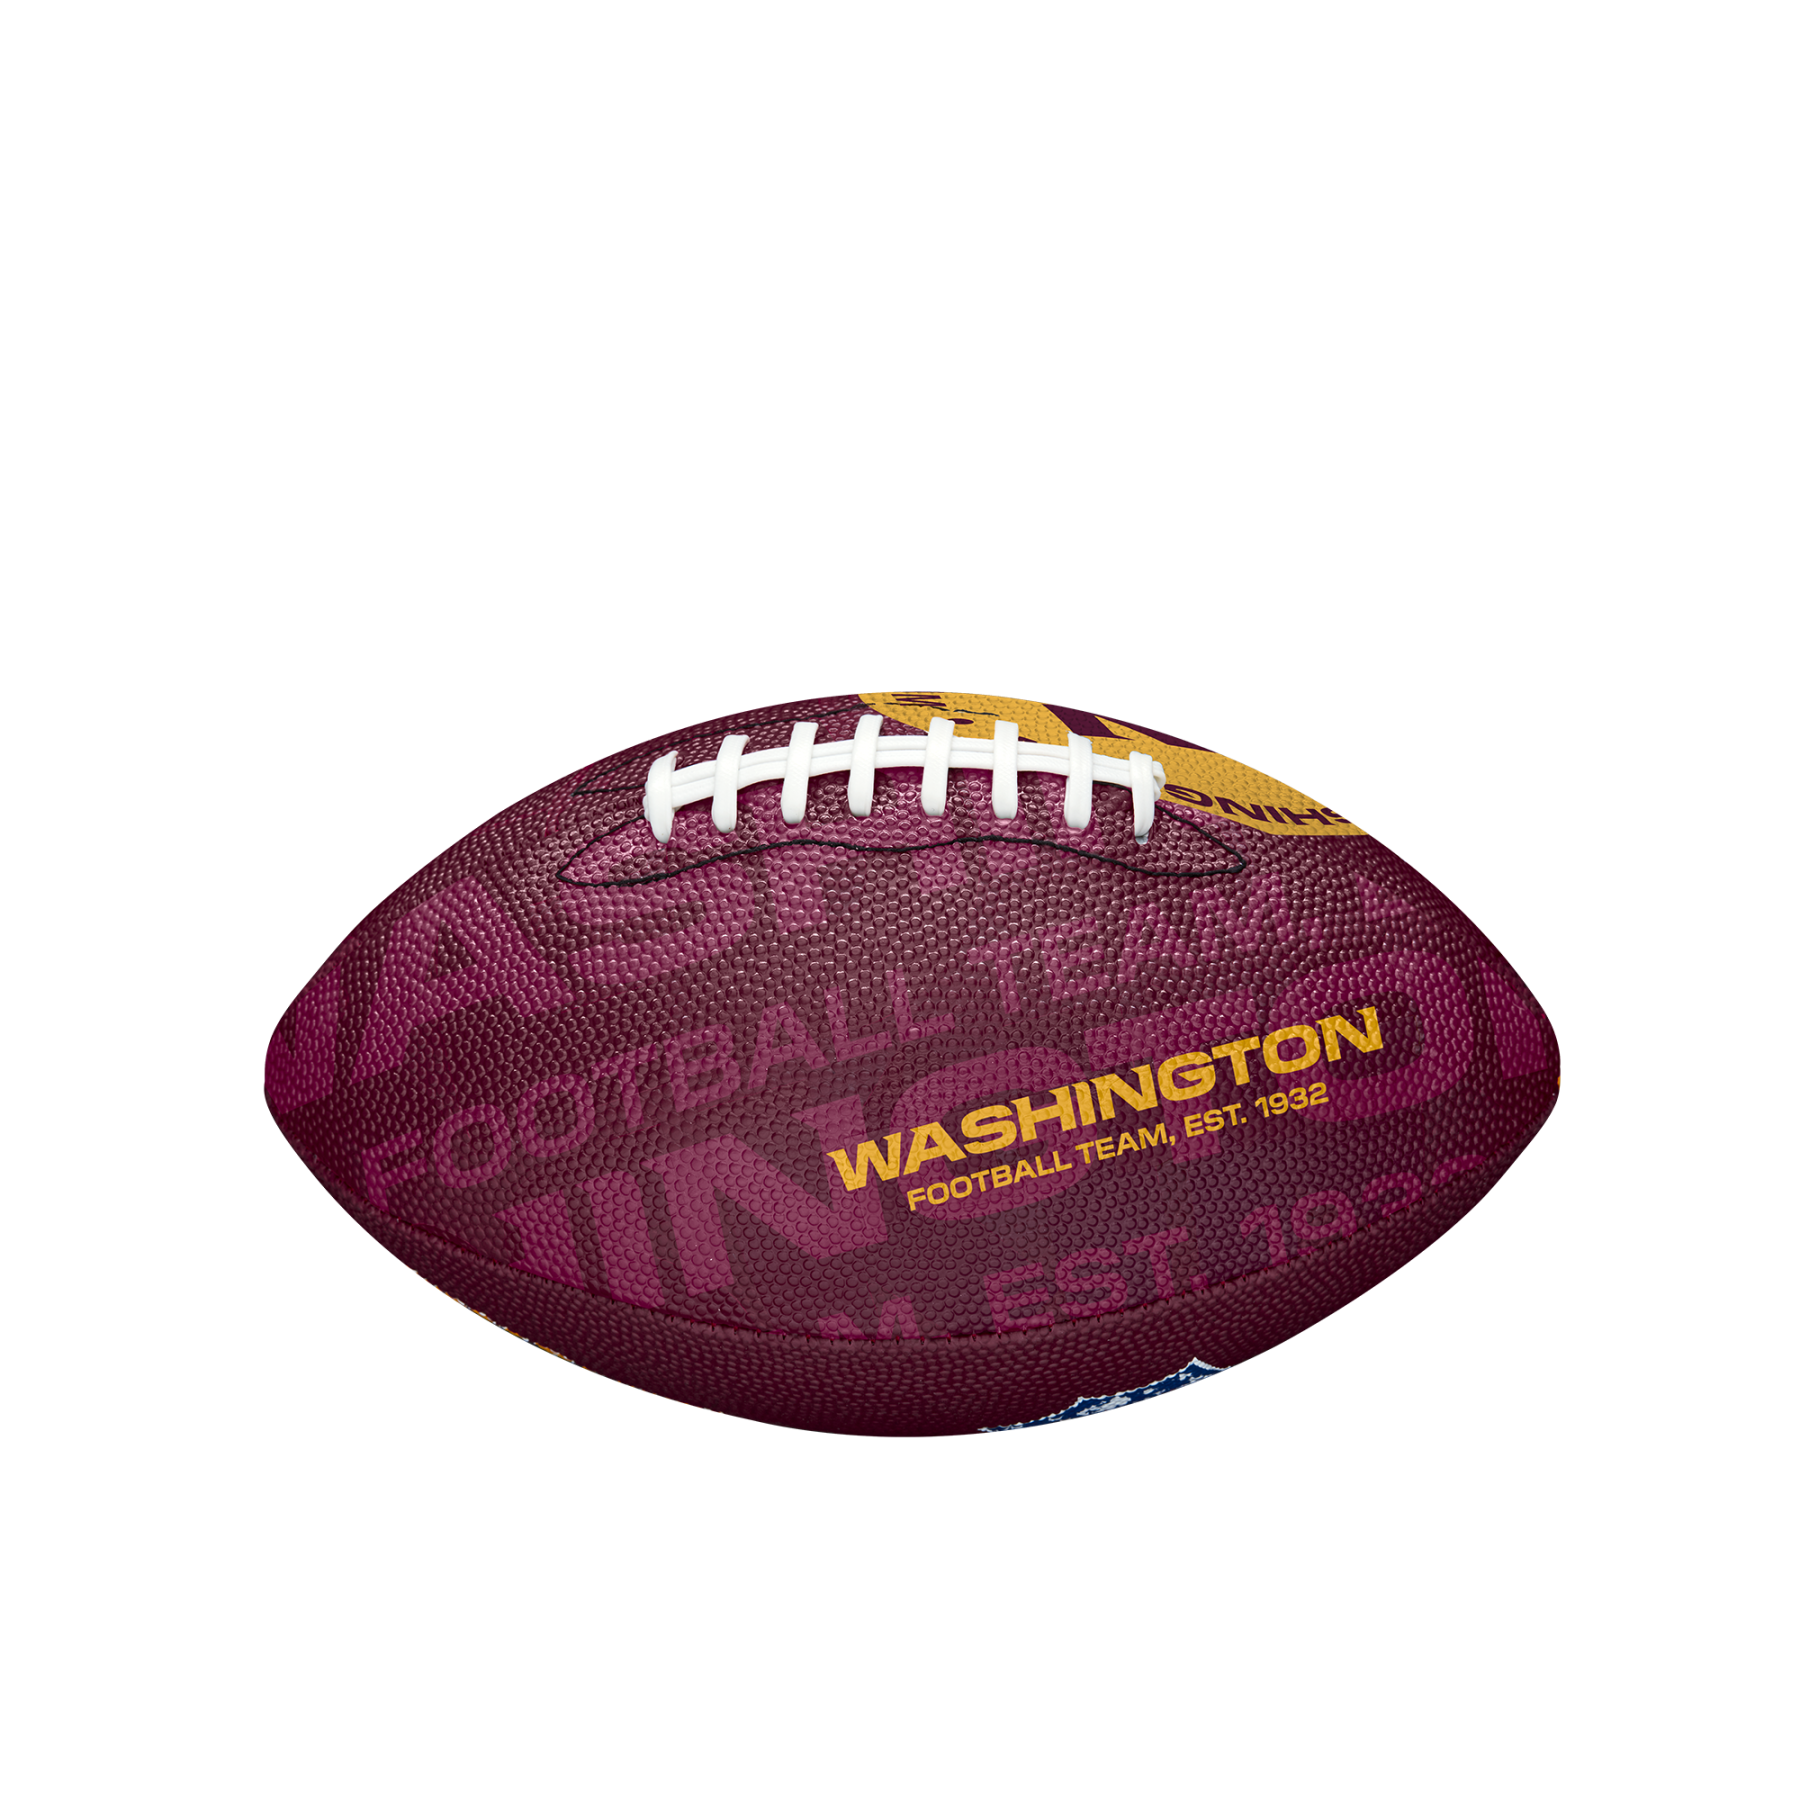 Ballon enfant Wilson Redskins NFL Logo